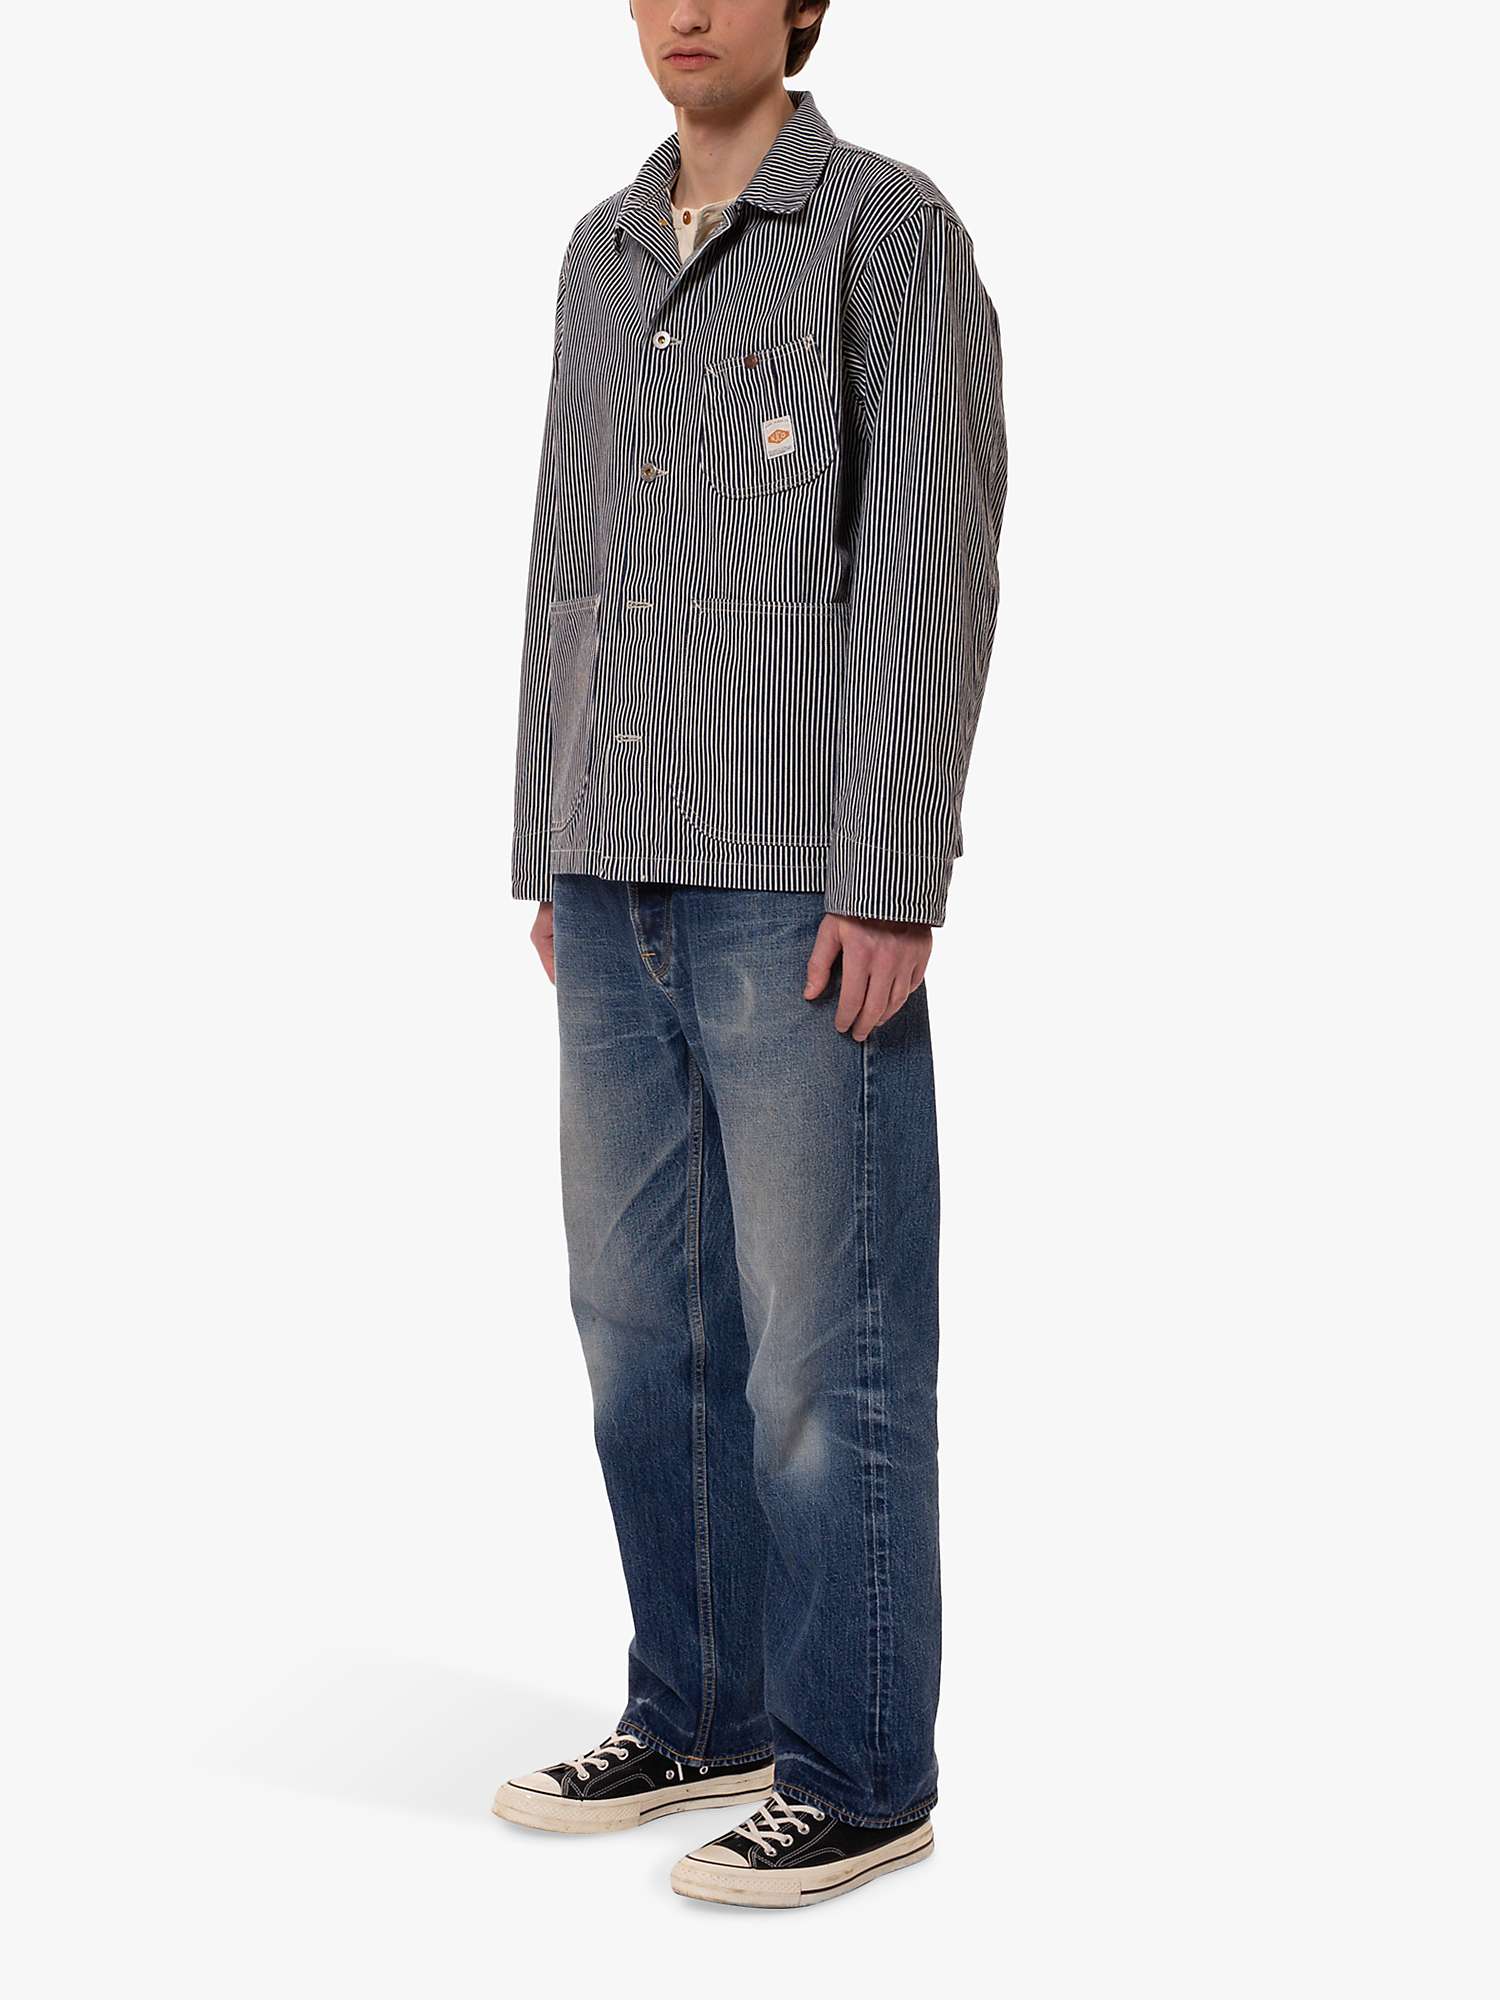 Buy Nudie Jeans Howie Chore Jacket, Multi Online at johnlewis.com